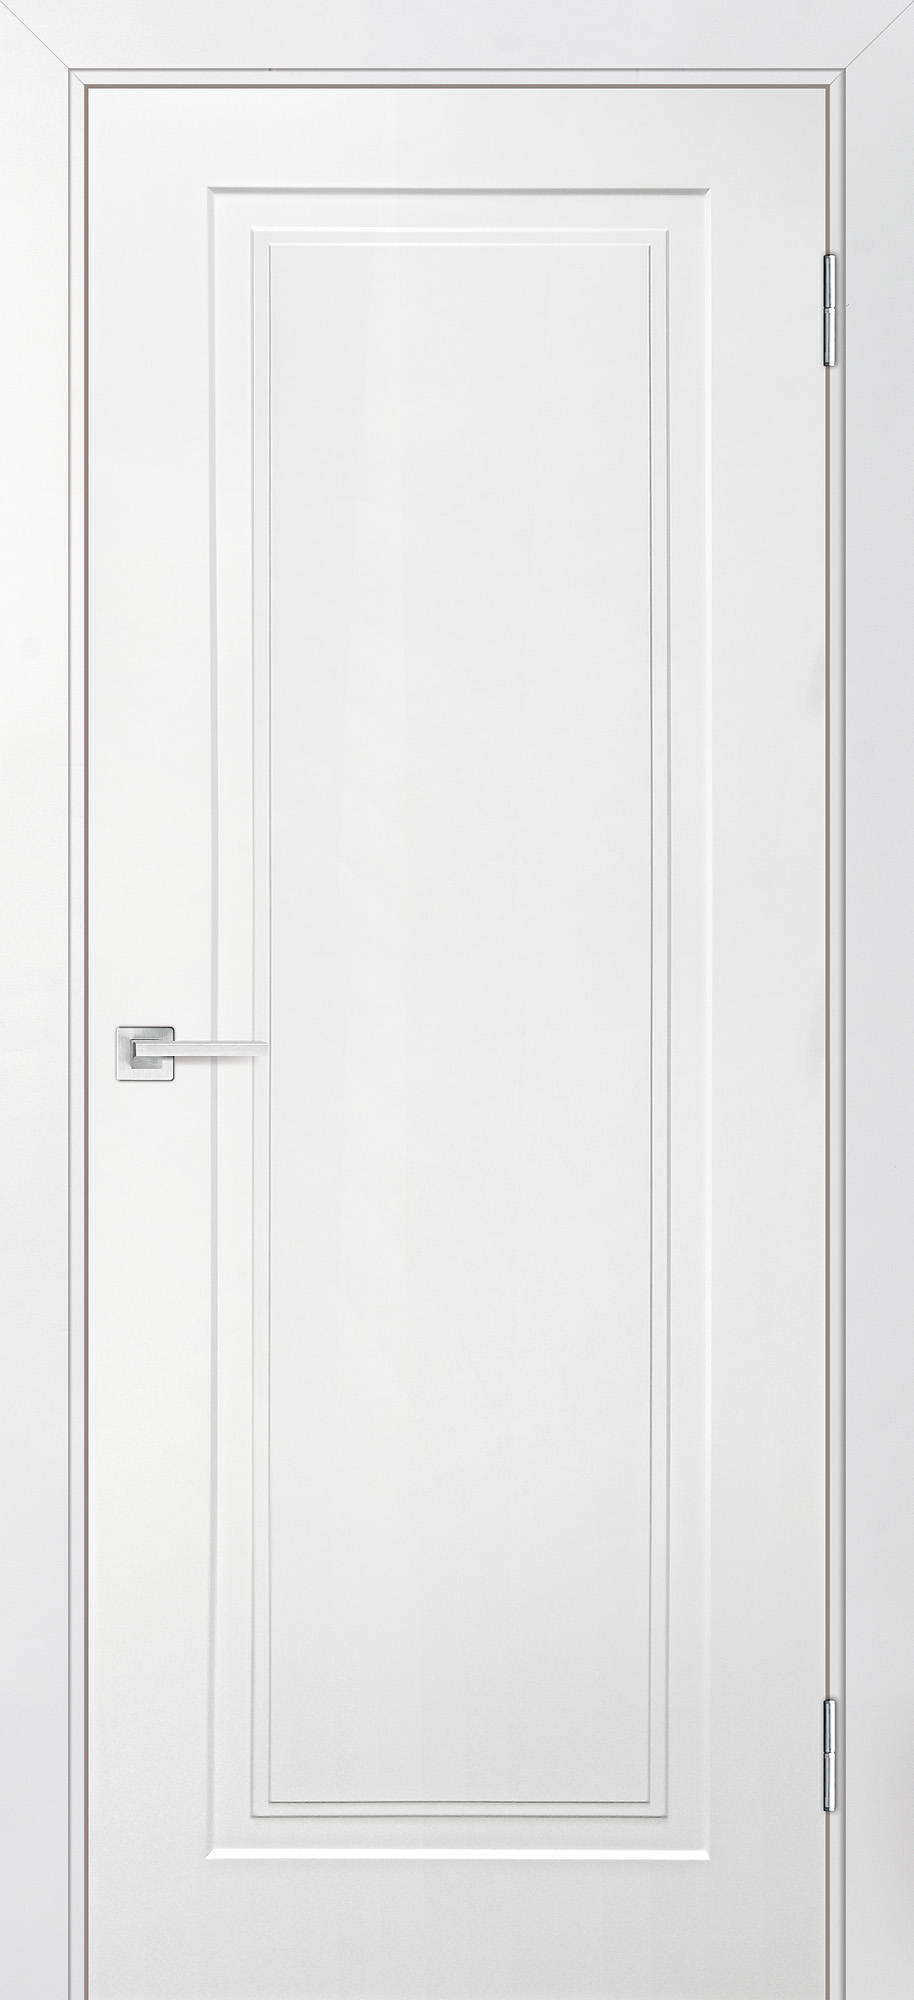 Двери крашеные (Эмаль) ТЕКОНА Смальта-Лайн 06 глухое Белый ral 9003 размер 200 х 70 см. артикул F0000093279